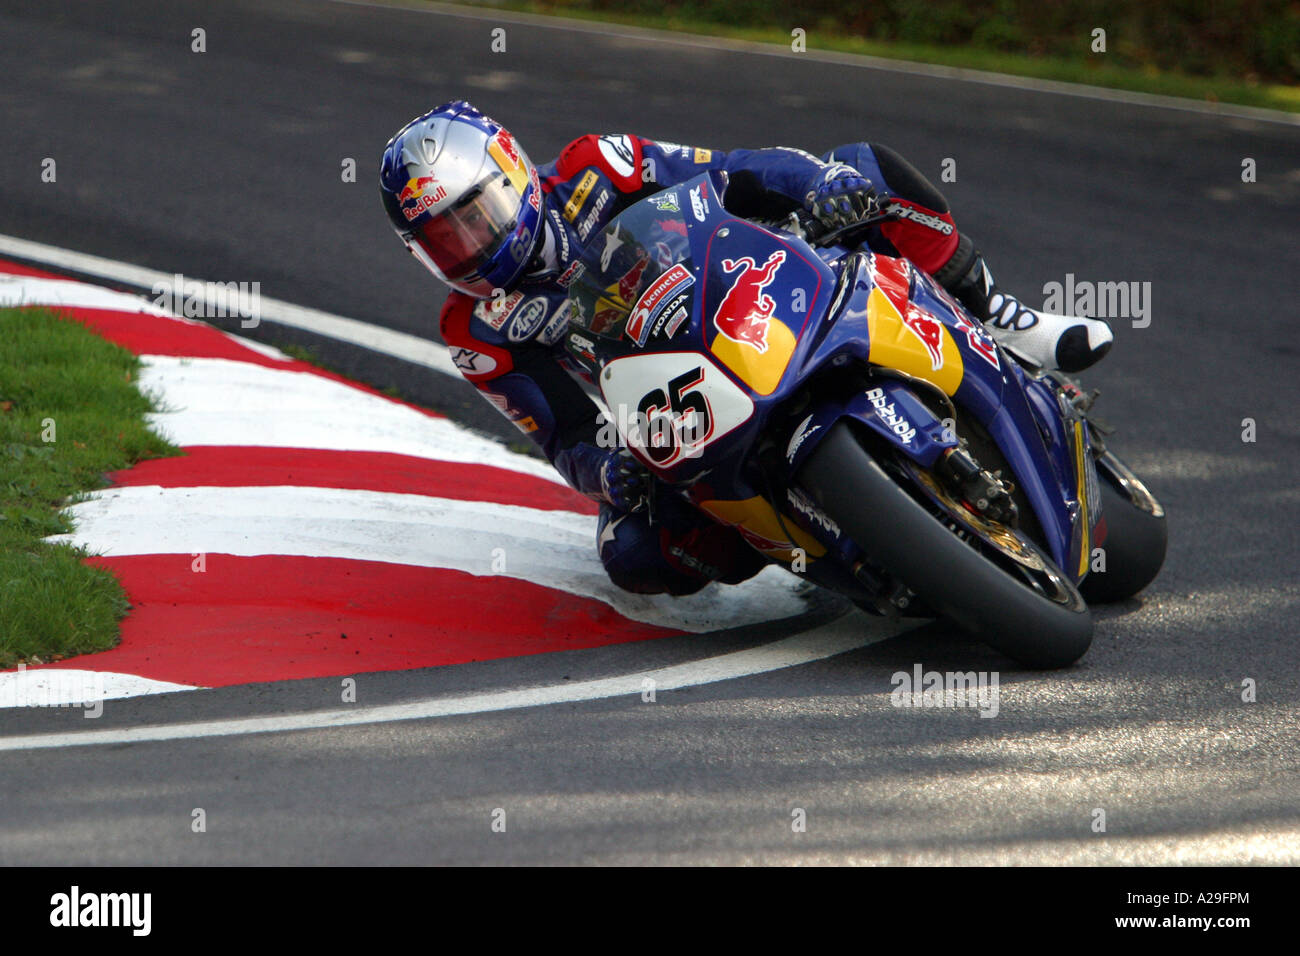 2006 British Superbike Championship Honda Rider Jonathan Rea racing at Cadwell Park Lincs Stock Photo